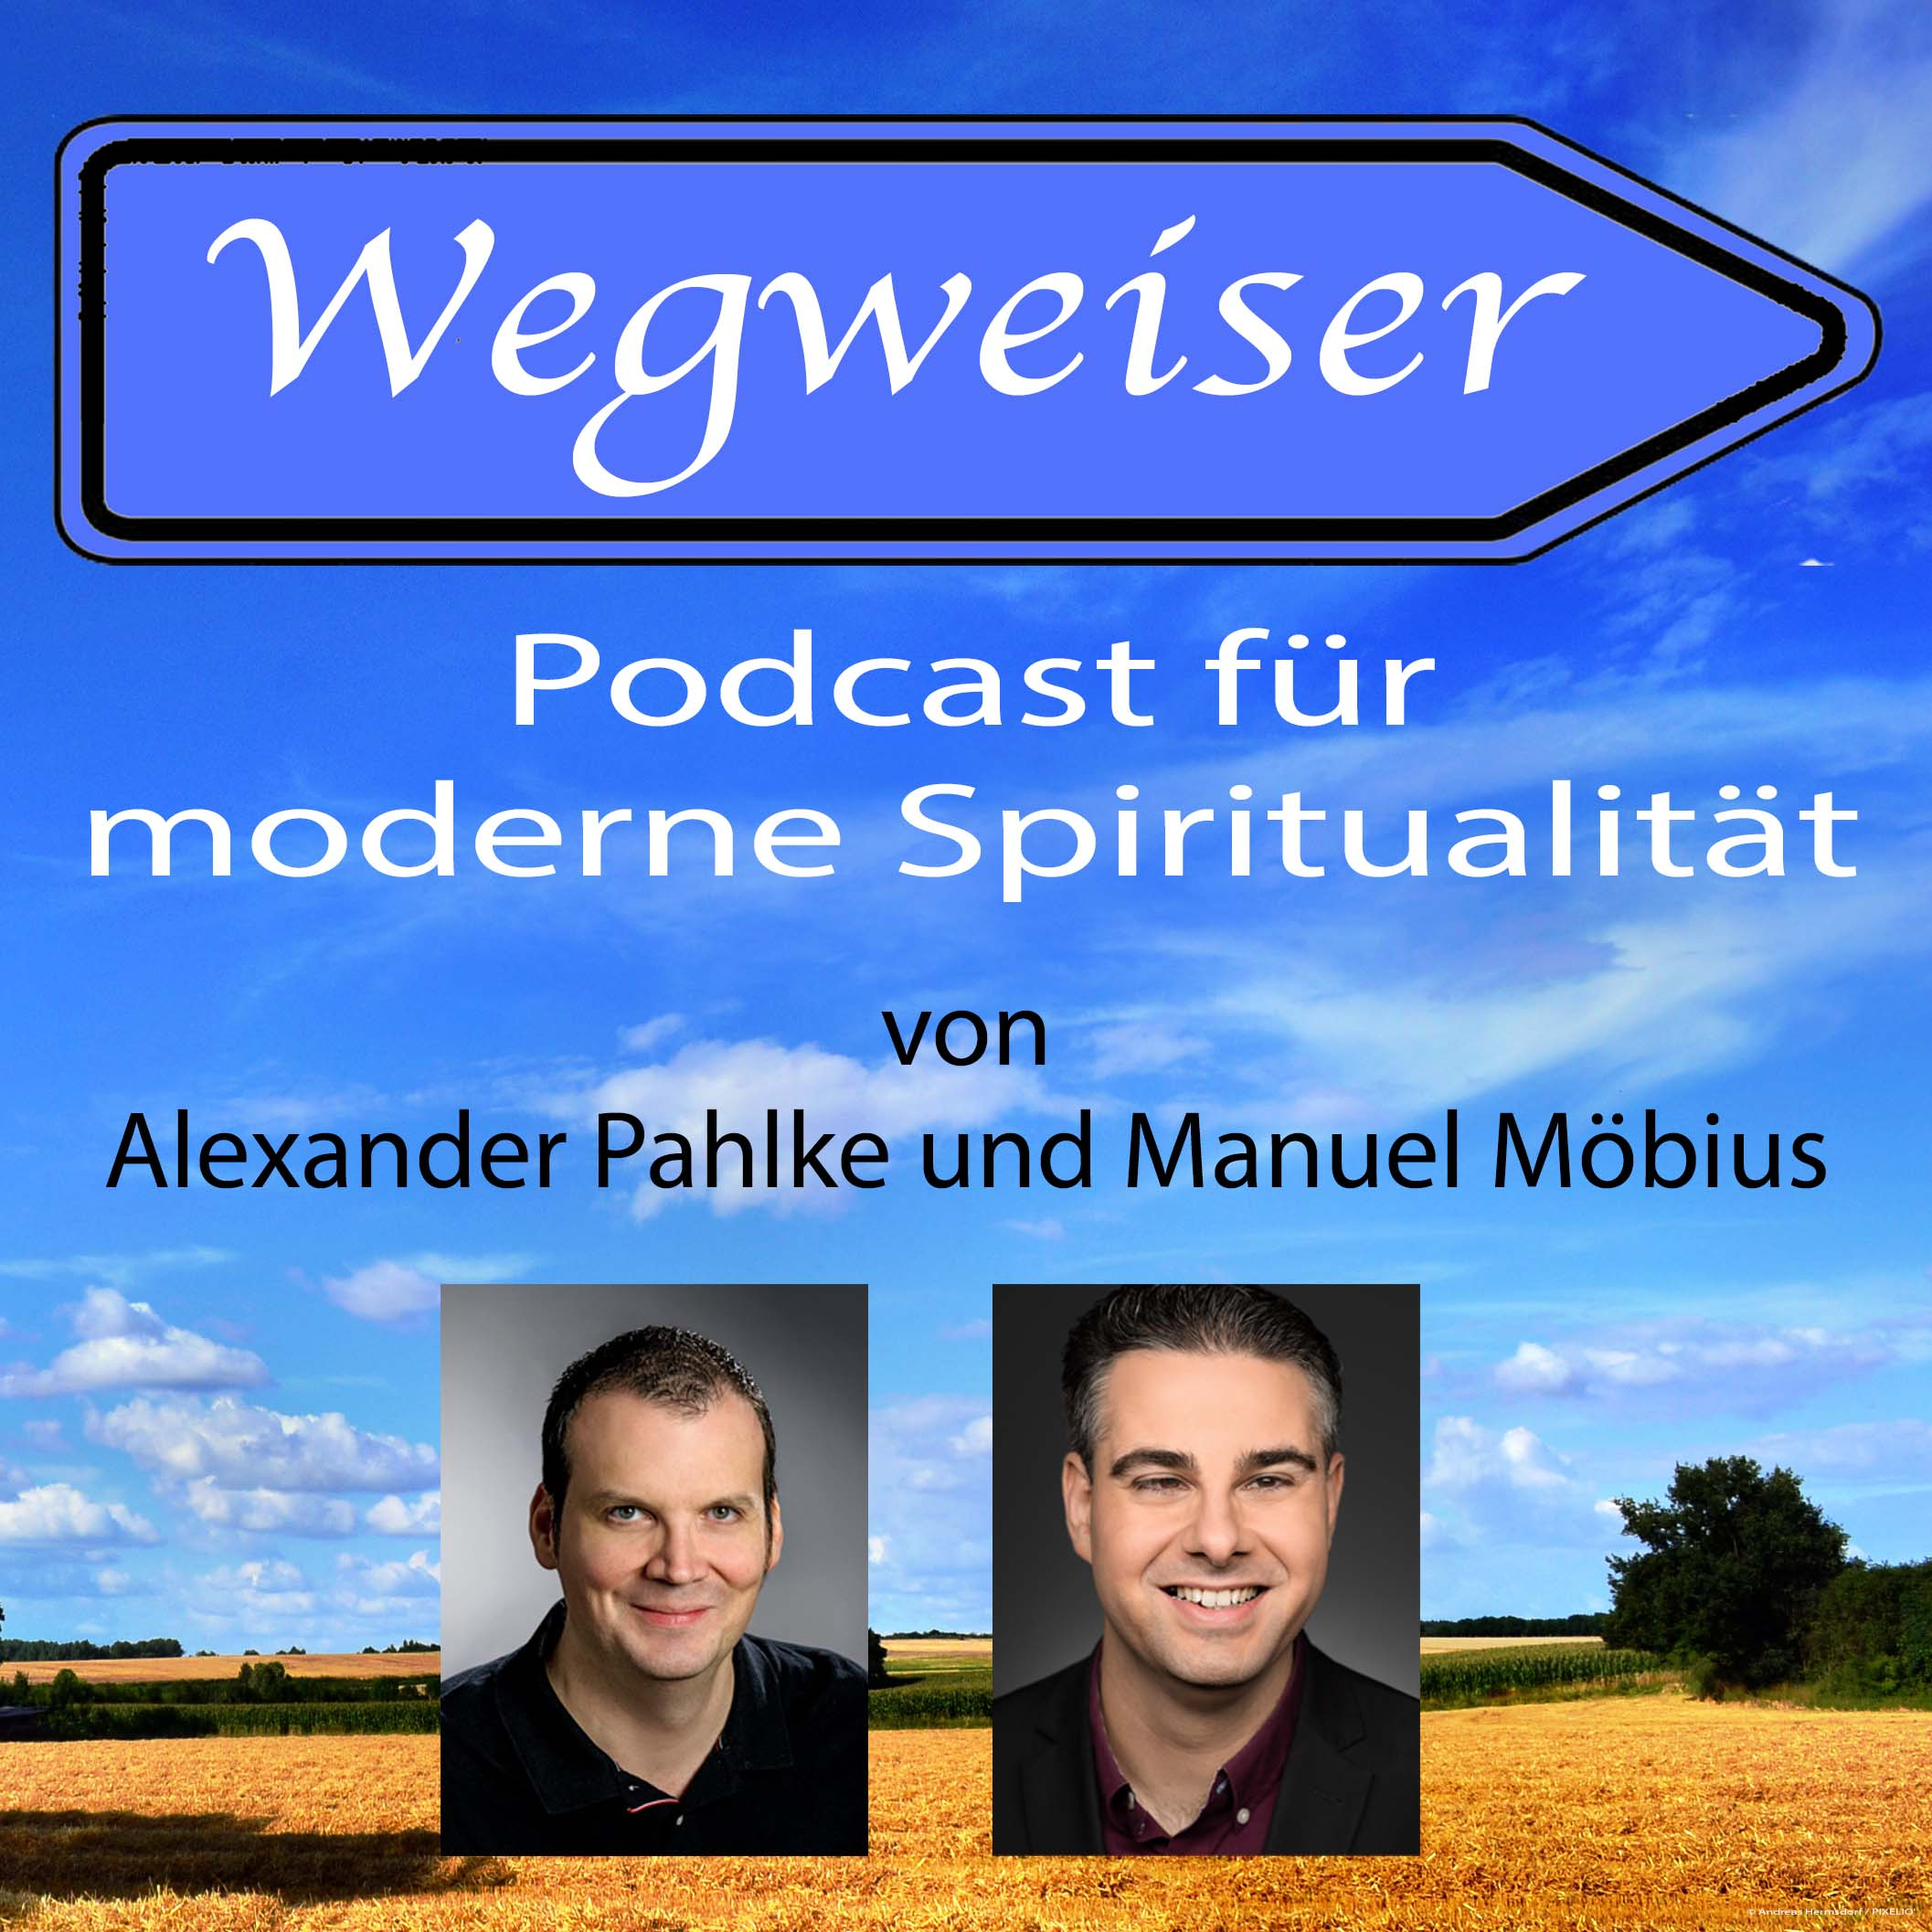 Wegweiser - Podcast für moderne Spiritualität 24/7